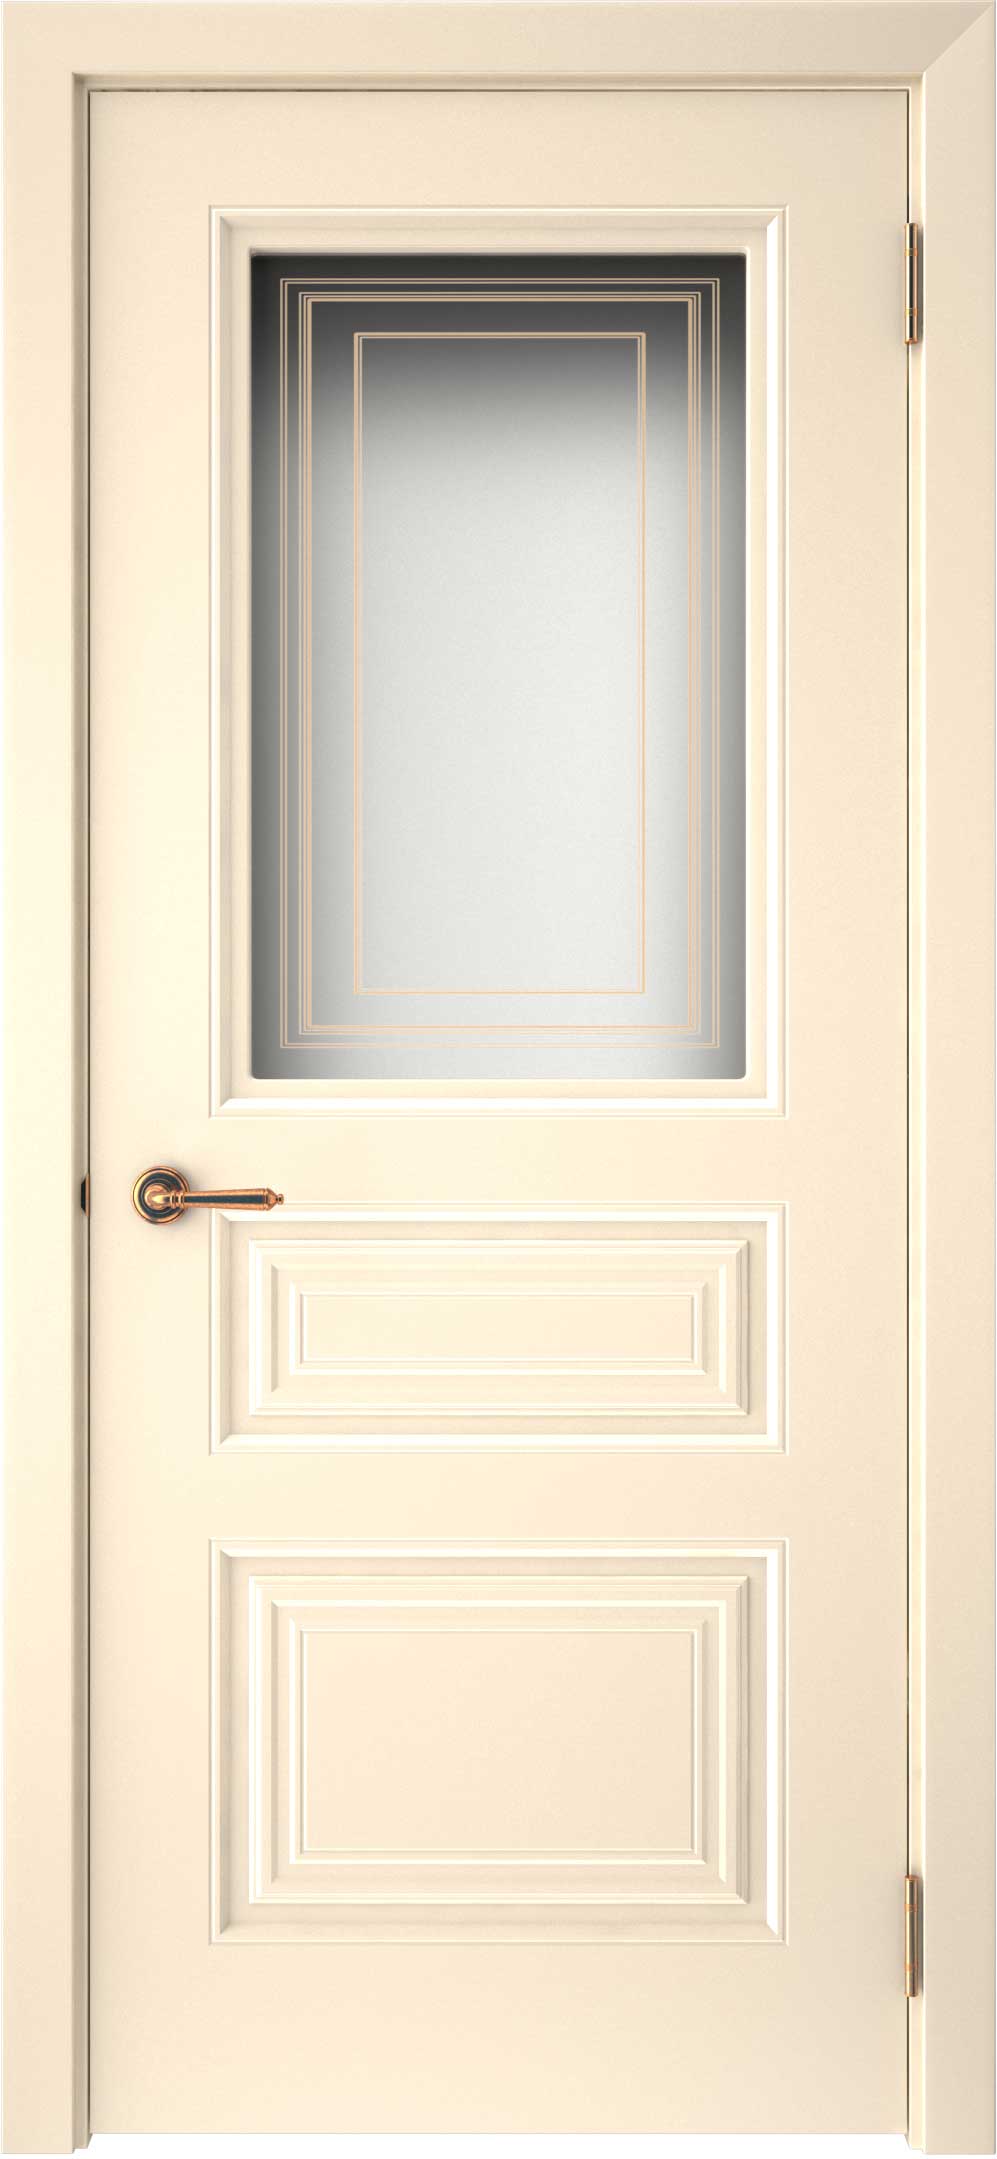 Двери крашеные (Эмаль) ТЕКОНА Смальта-44 со стеклом Ваниль ral размер 200 х 60 см. артикул F0000093307